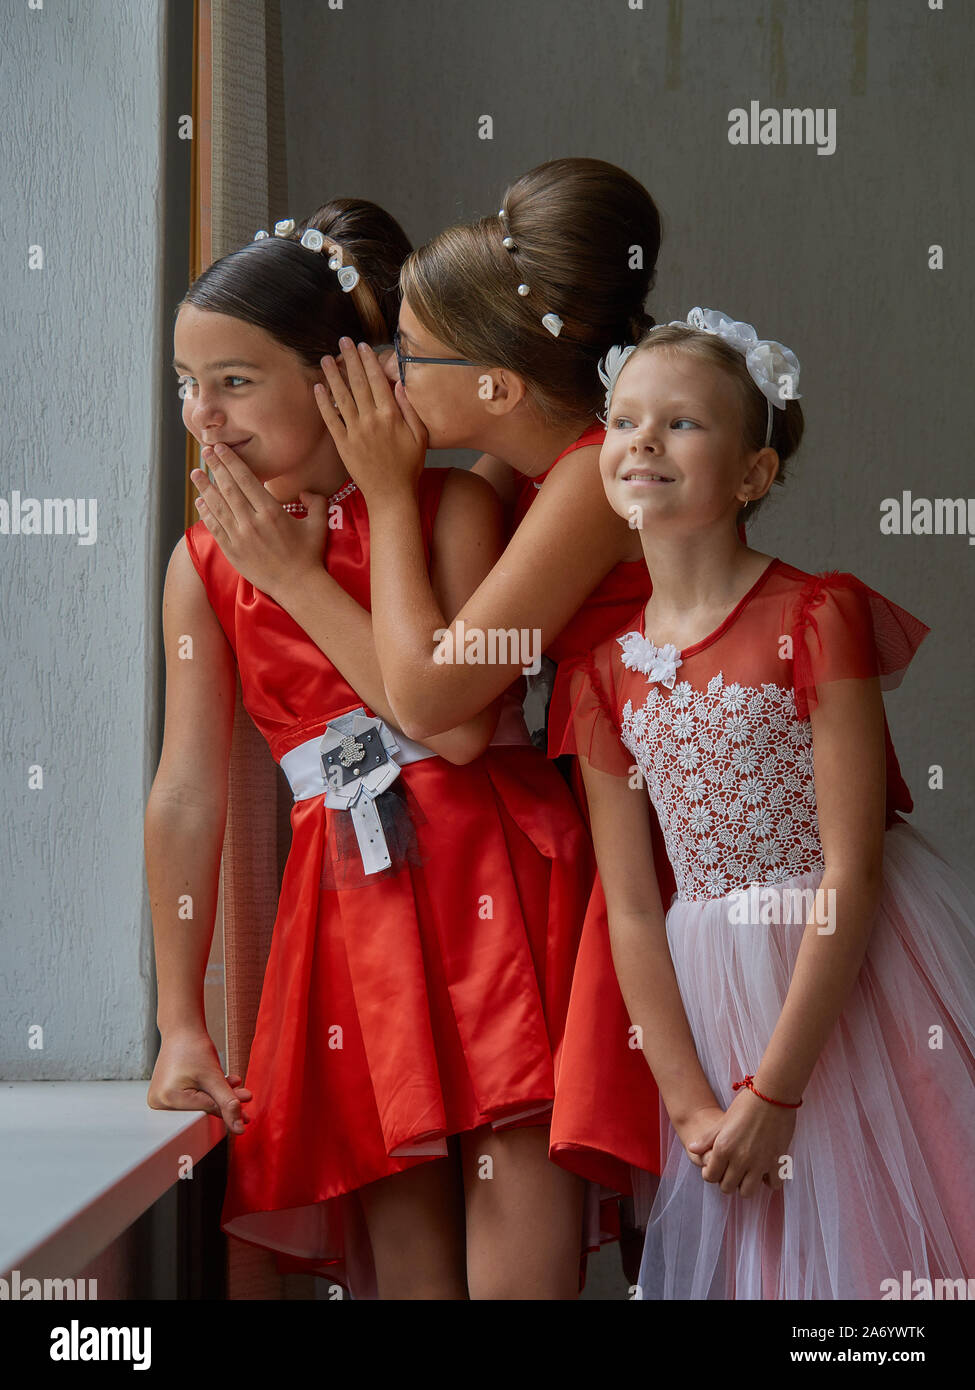 Vitebsk-Belarus. Europe-September oriental 19, 2019: tres niñas menores de 15 años vestidos de noche vestidos de rojo brillante comunicarse durante un b Foto de stock